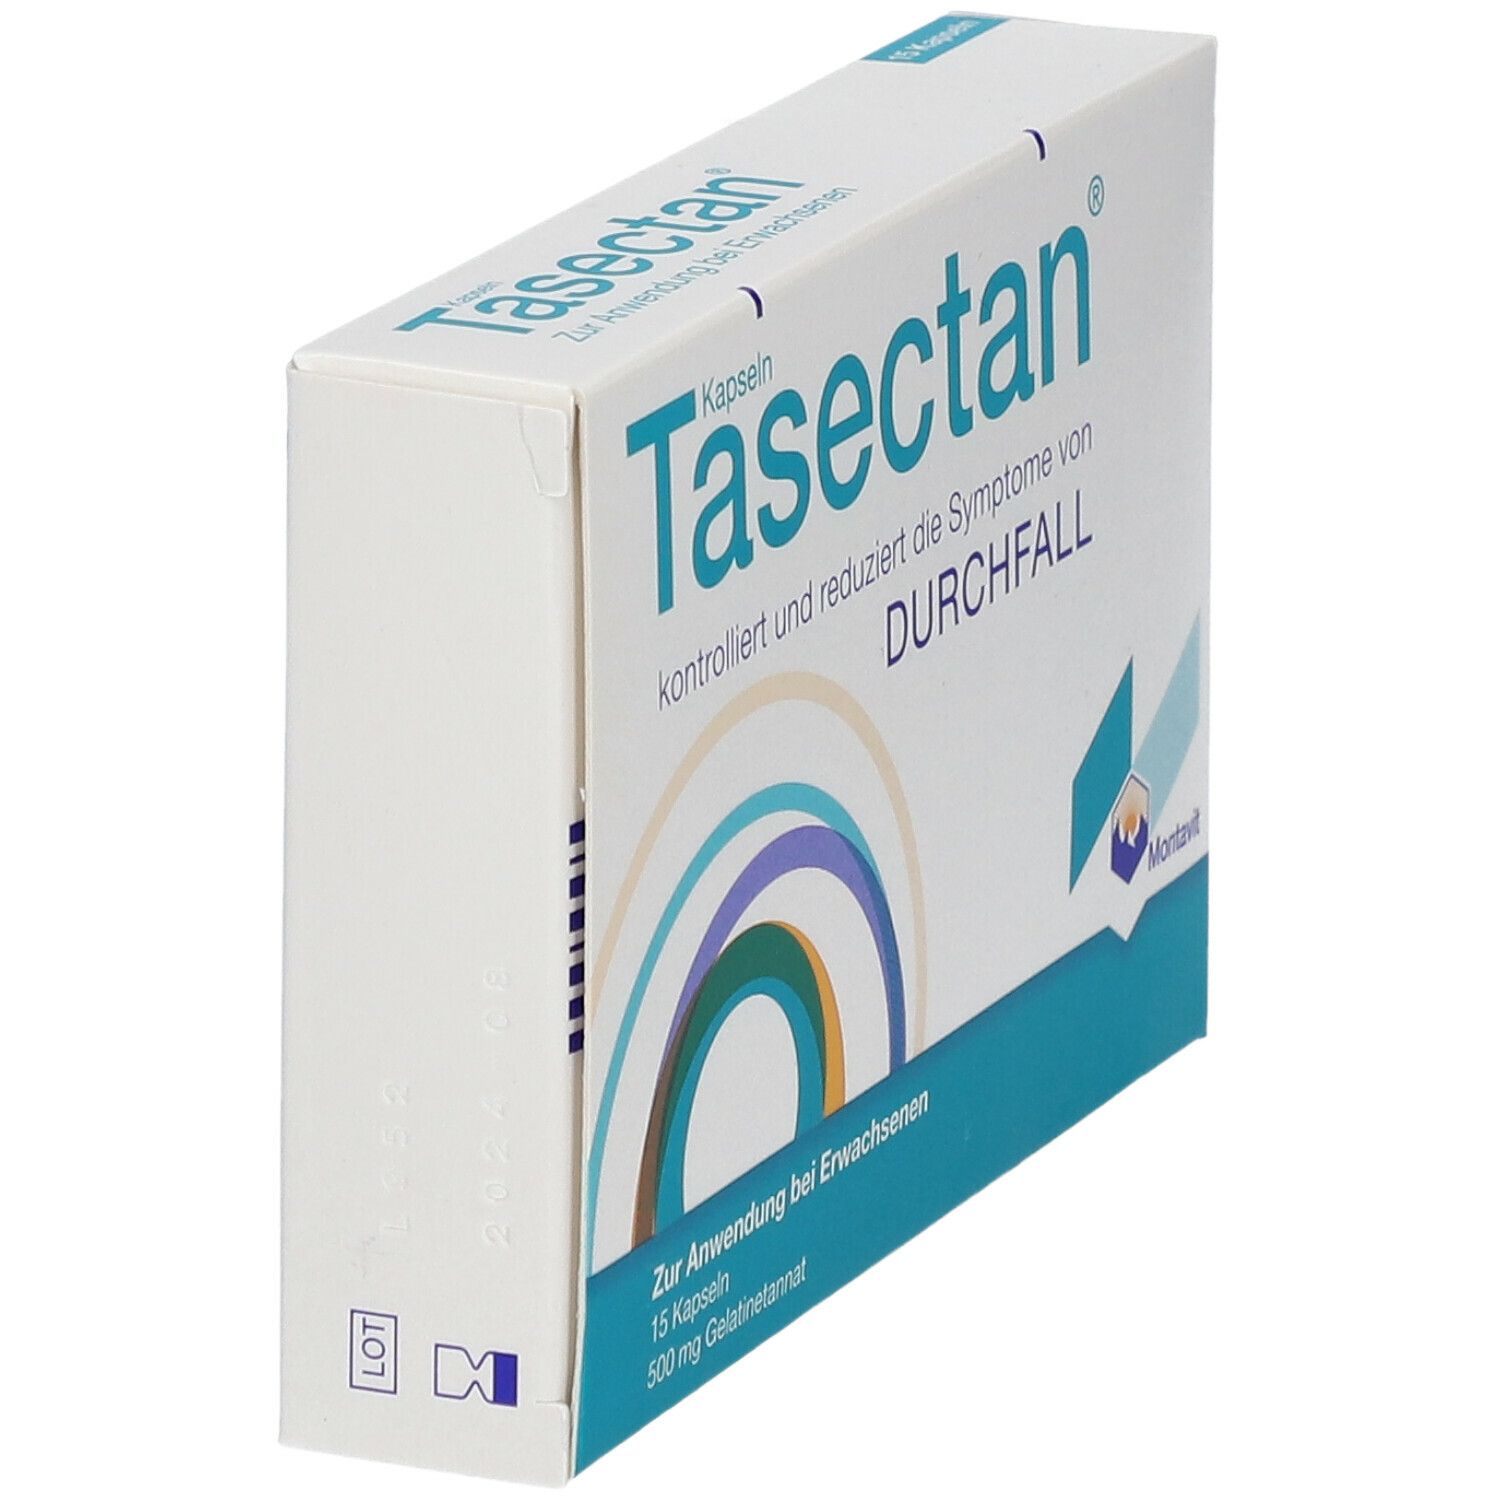 Tasectan® Kapseln